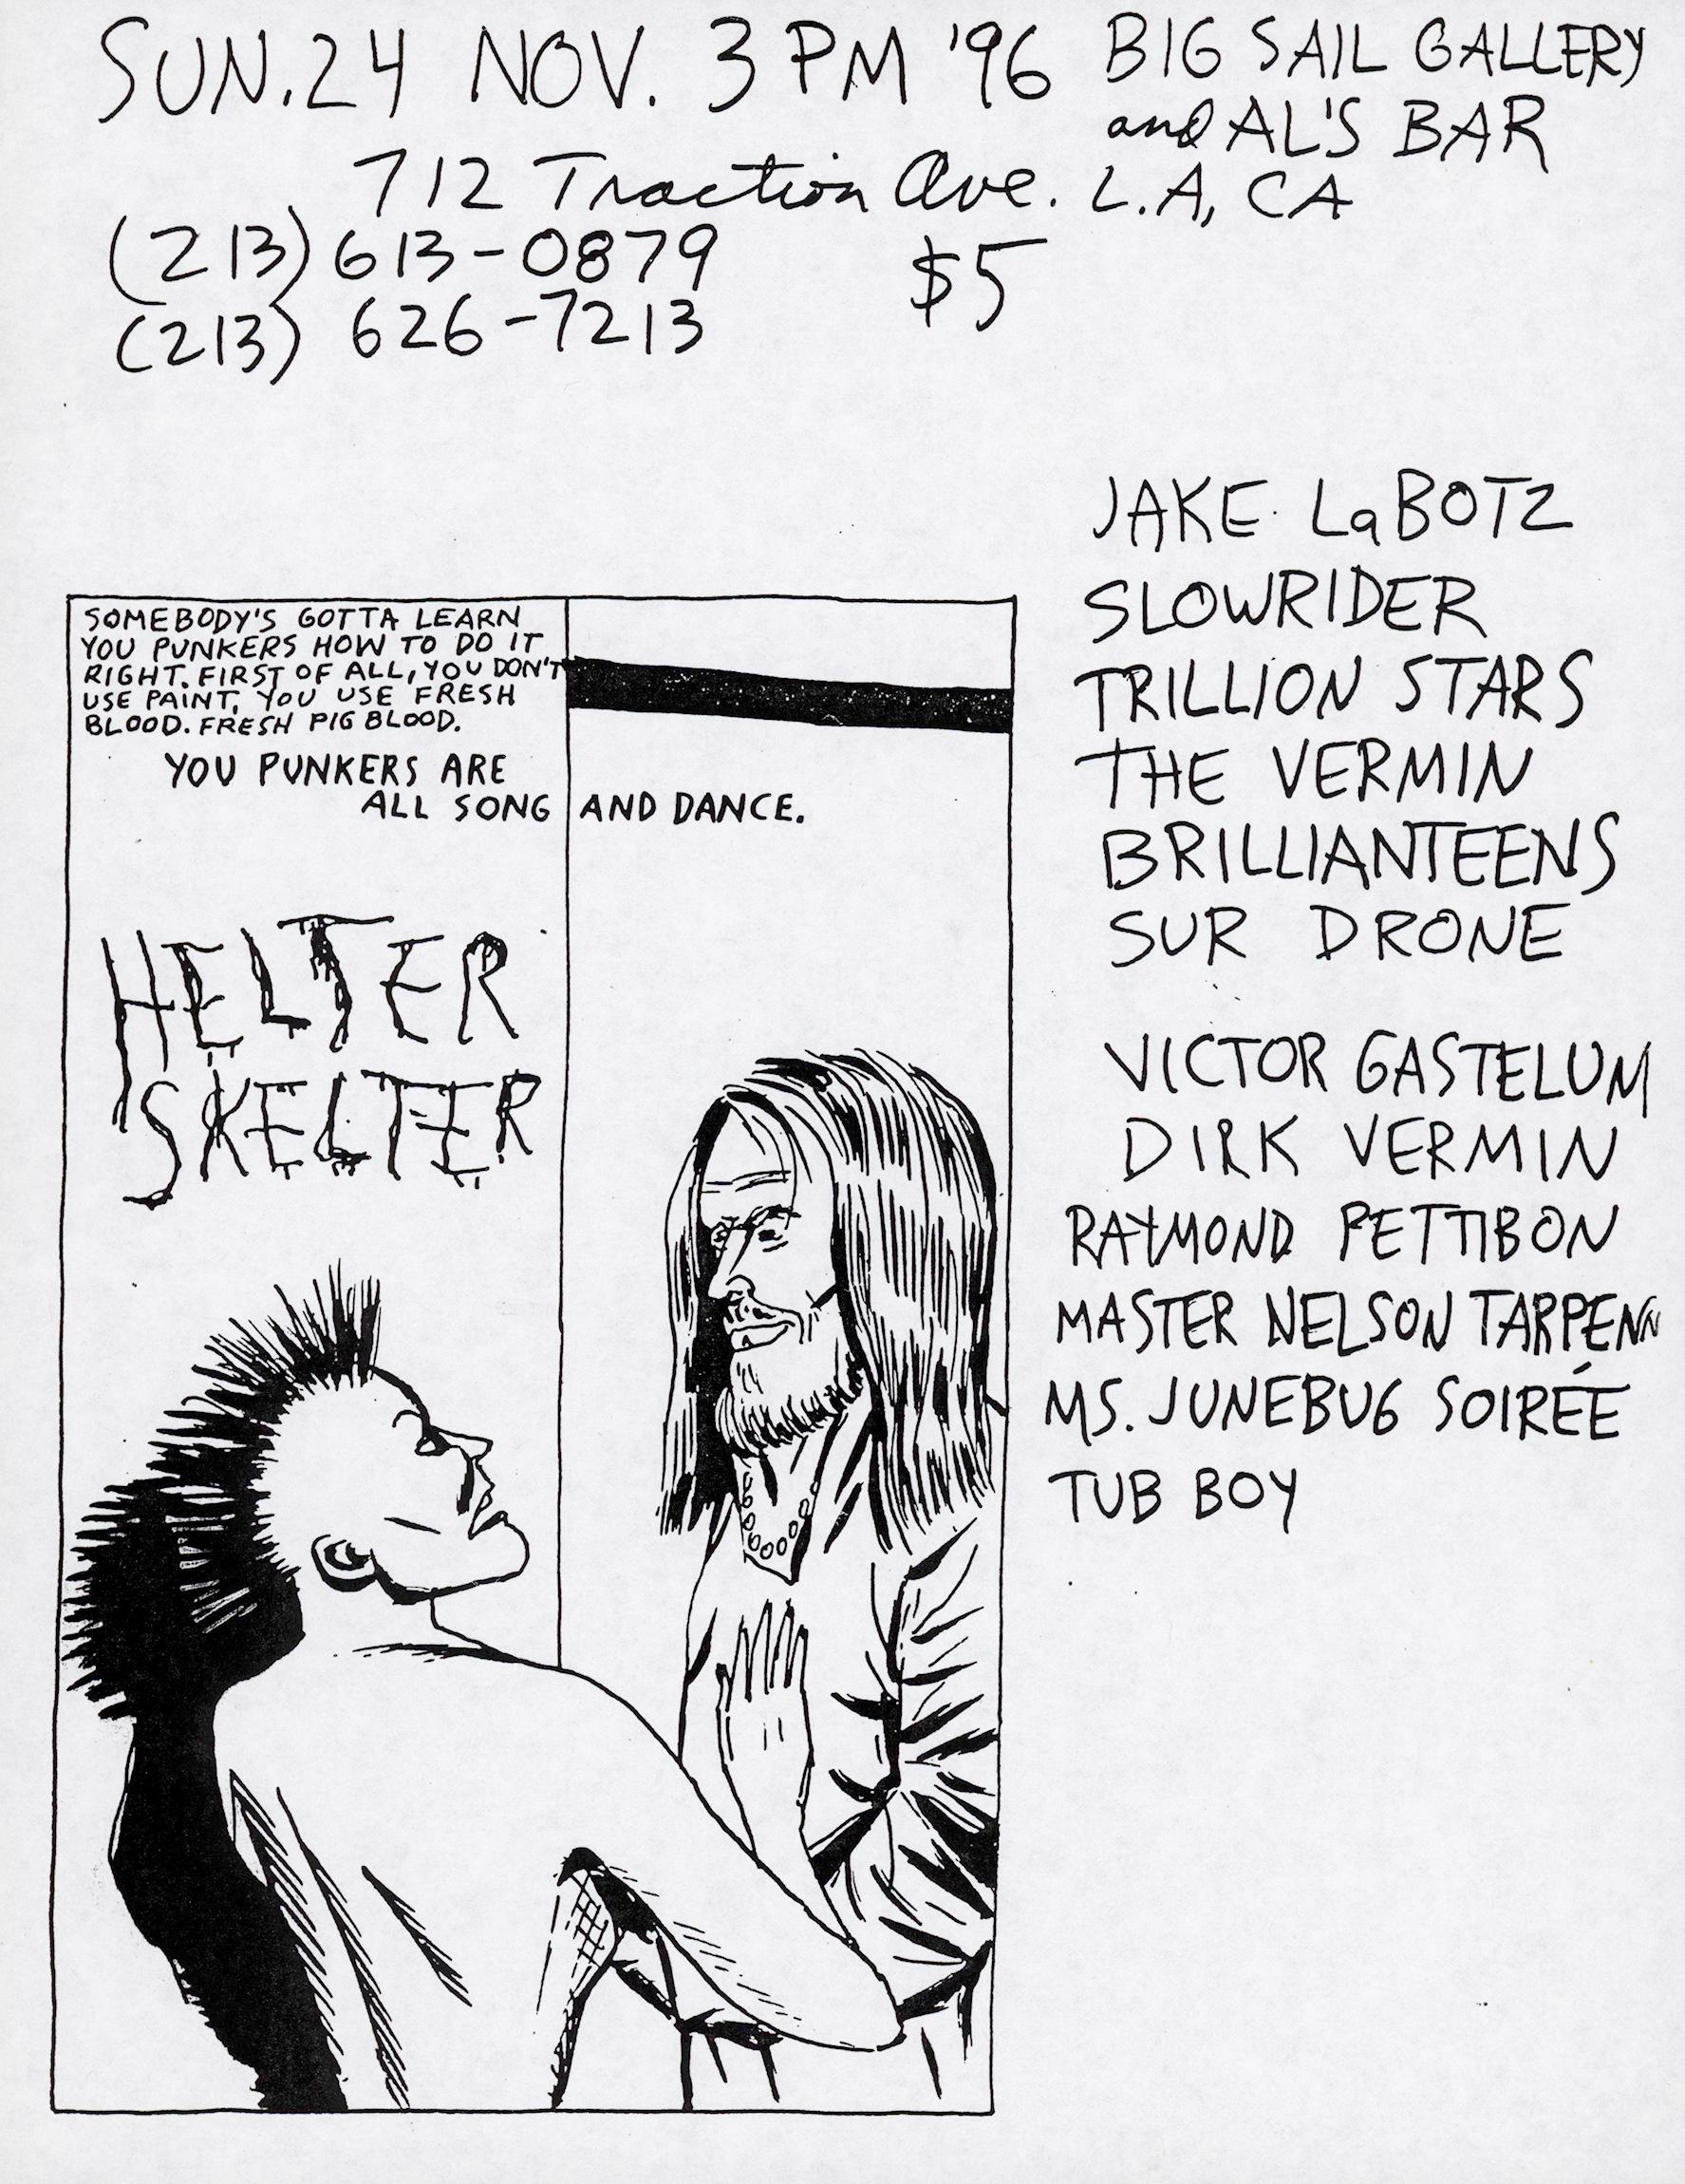 Volantino Punk illustrato di Raymond Pettibon 1996:u2028
Rarissimo volantino punk del 1996 illustrato da Raymond Pettibon per un locale di Los Angeles, in California, dove Pettibon si esibiva tra amici (Pettibon è presentato come artista in basso a